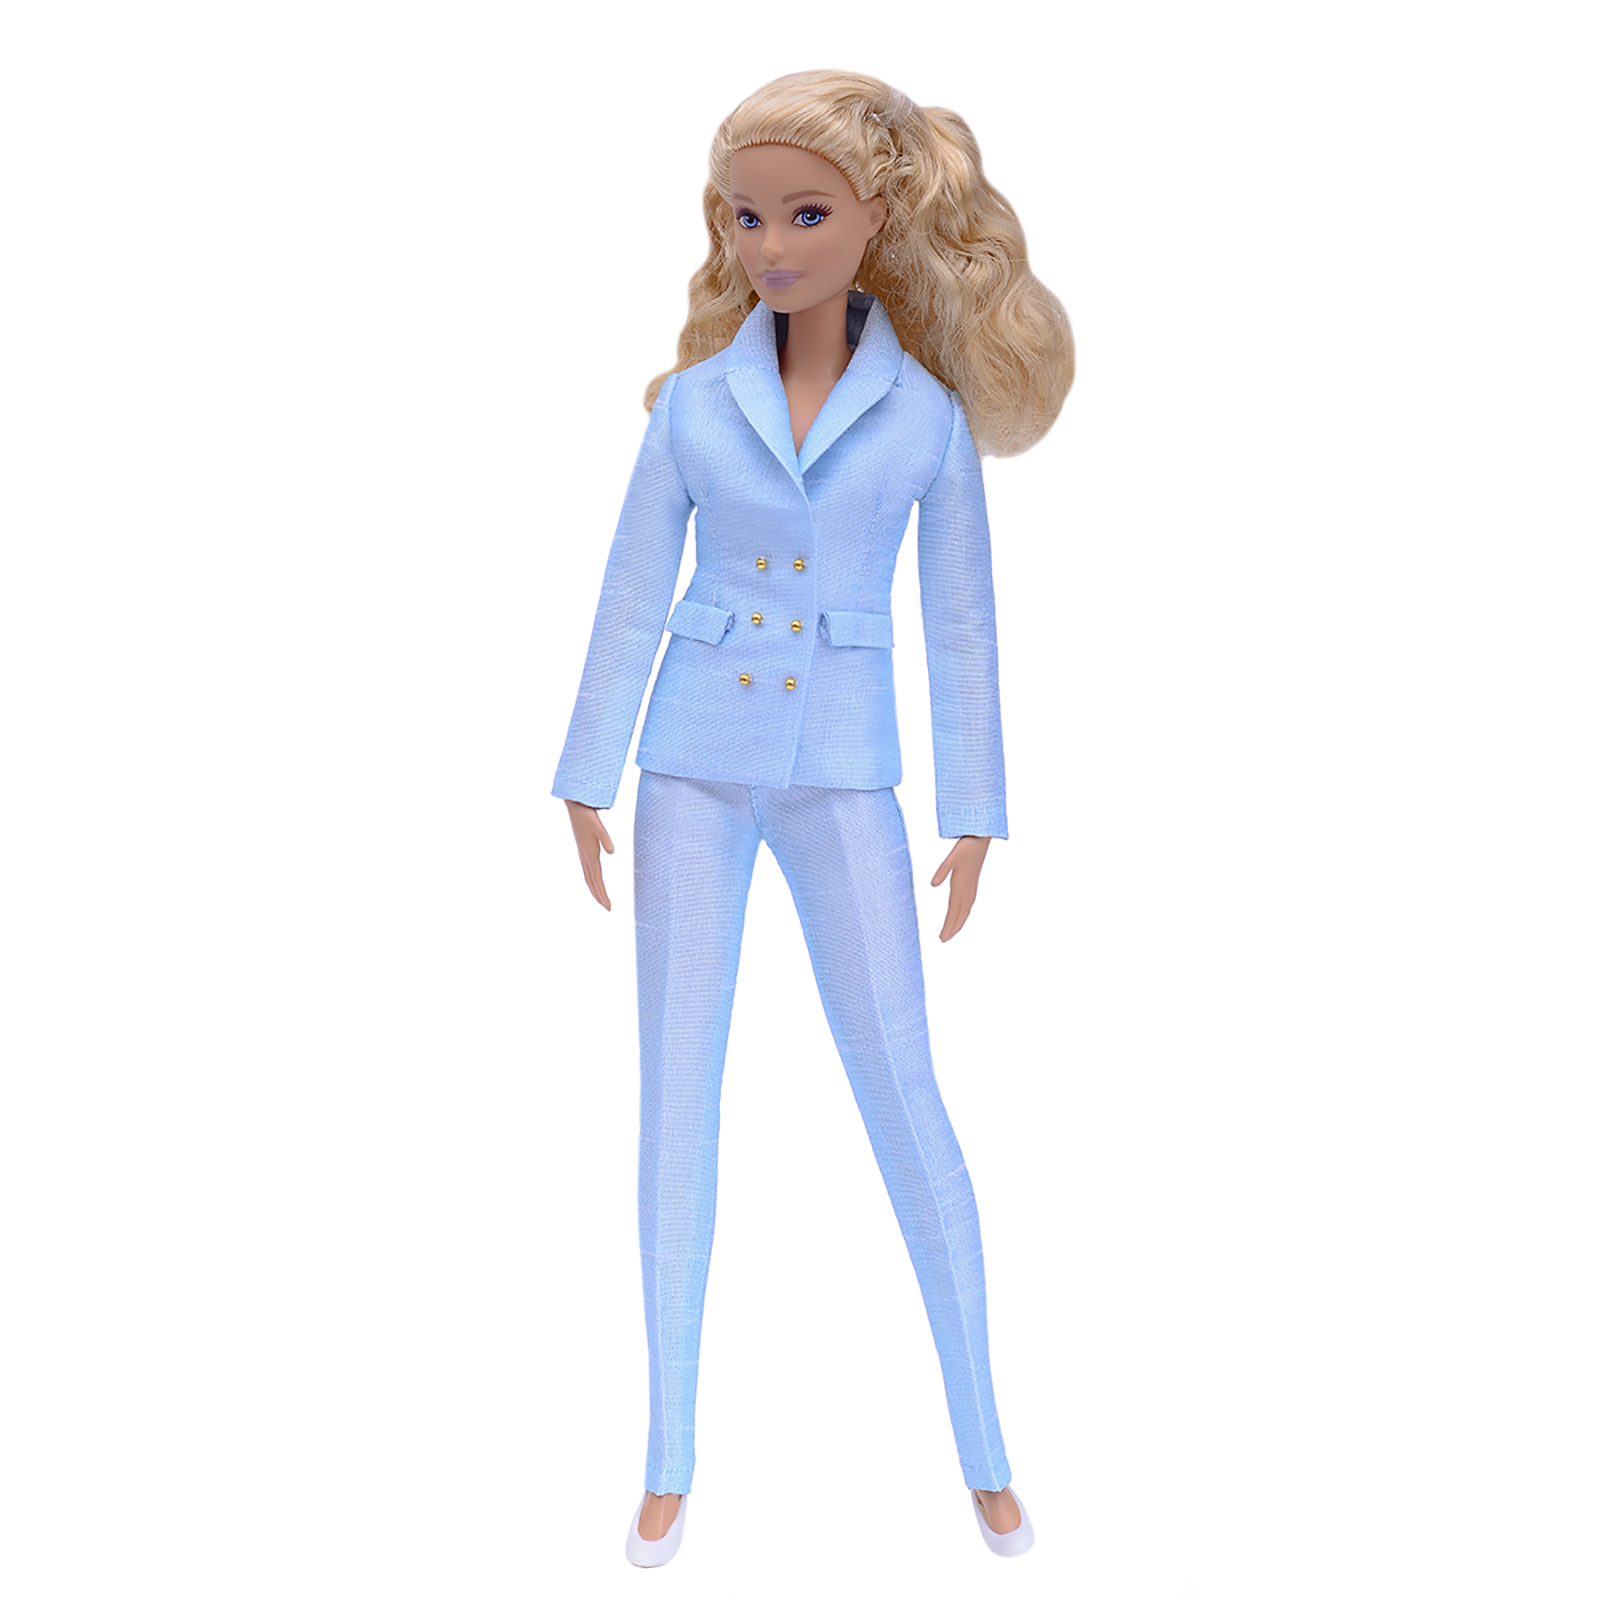 Шелковый брючный костюм Эленприв Светло-голубой для куклы 29 см типа Барби FA-011-09 - фото 3